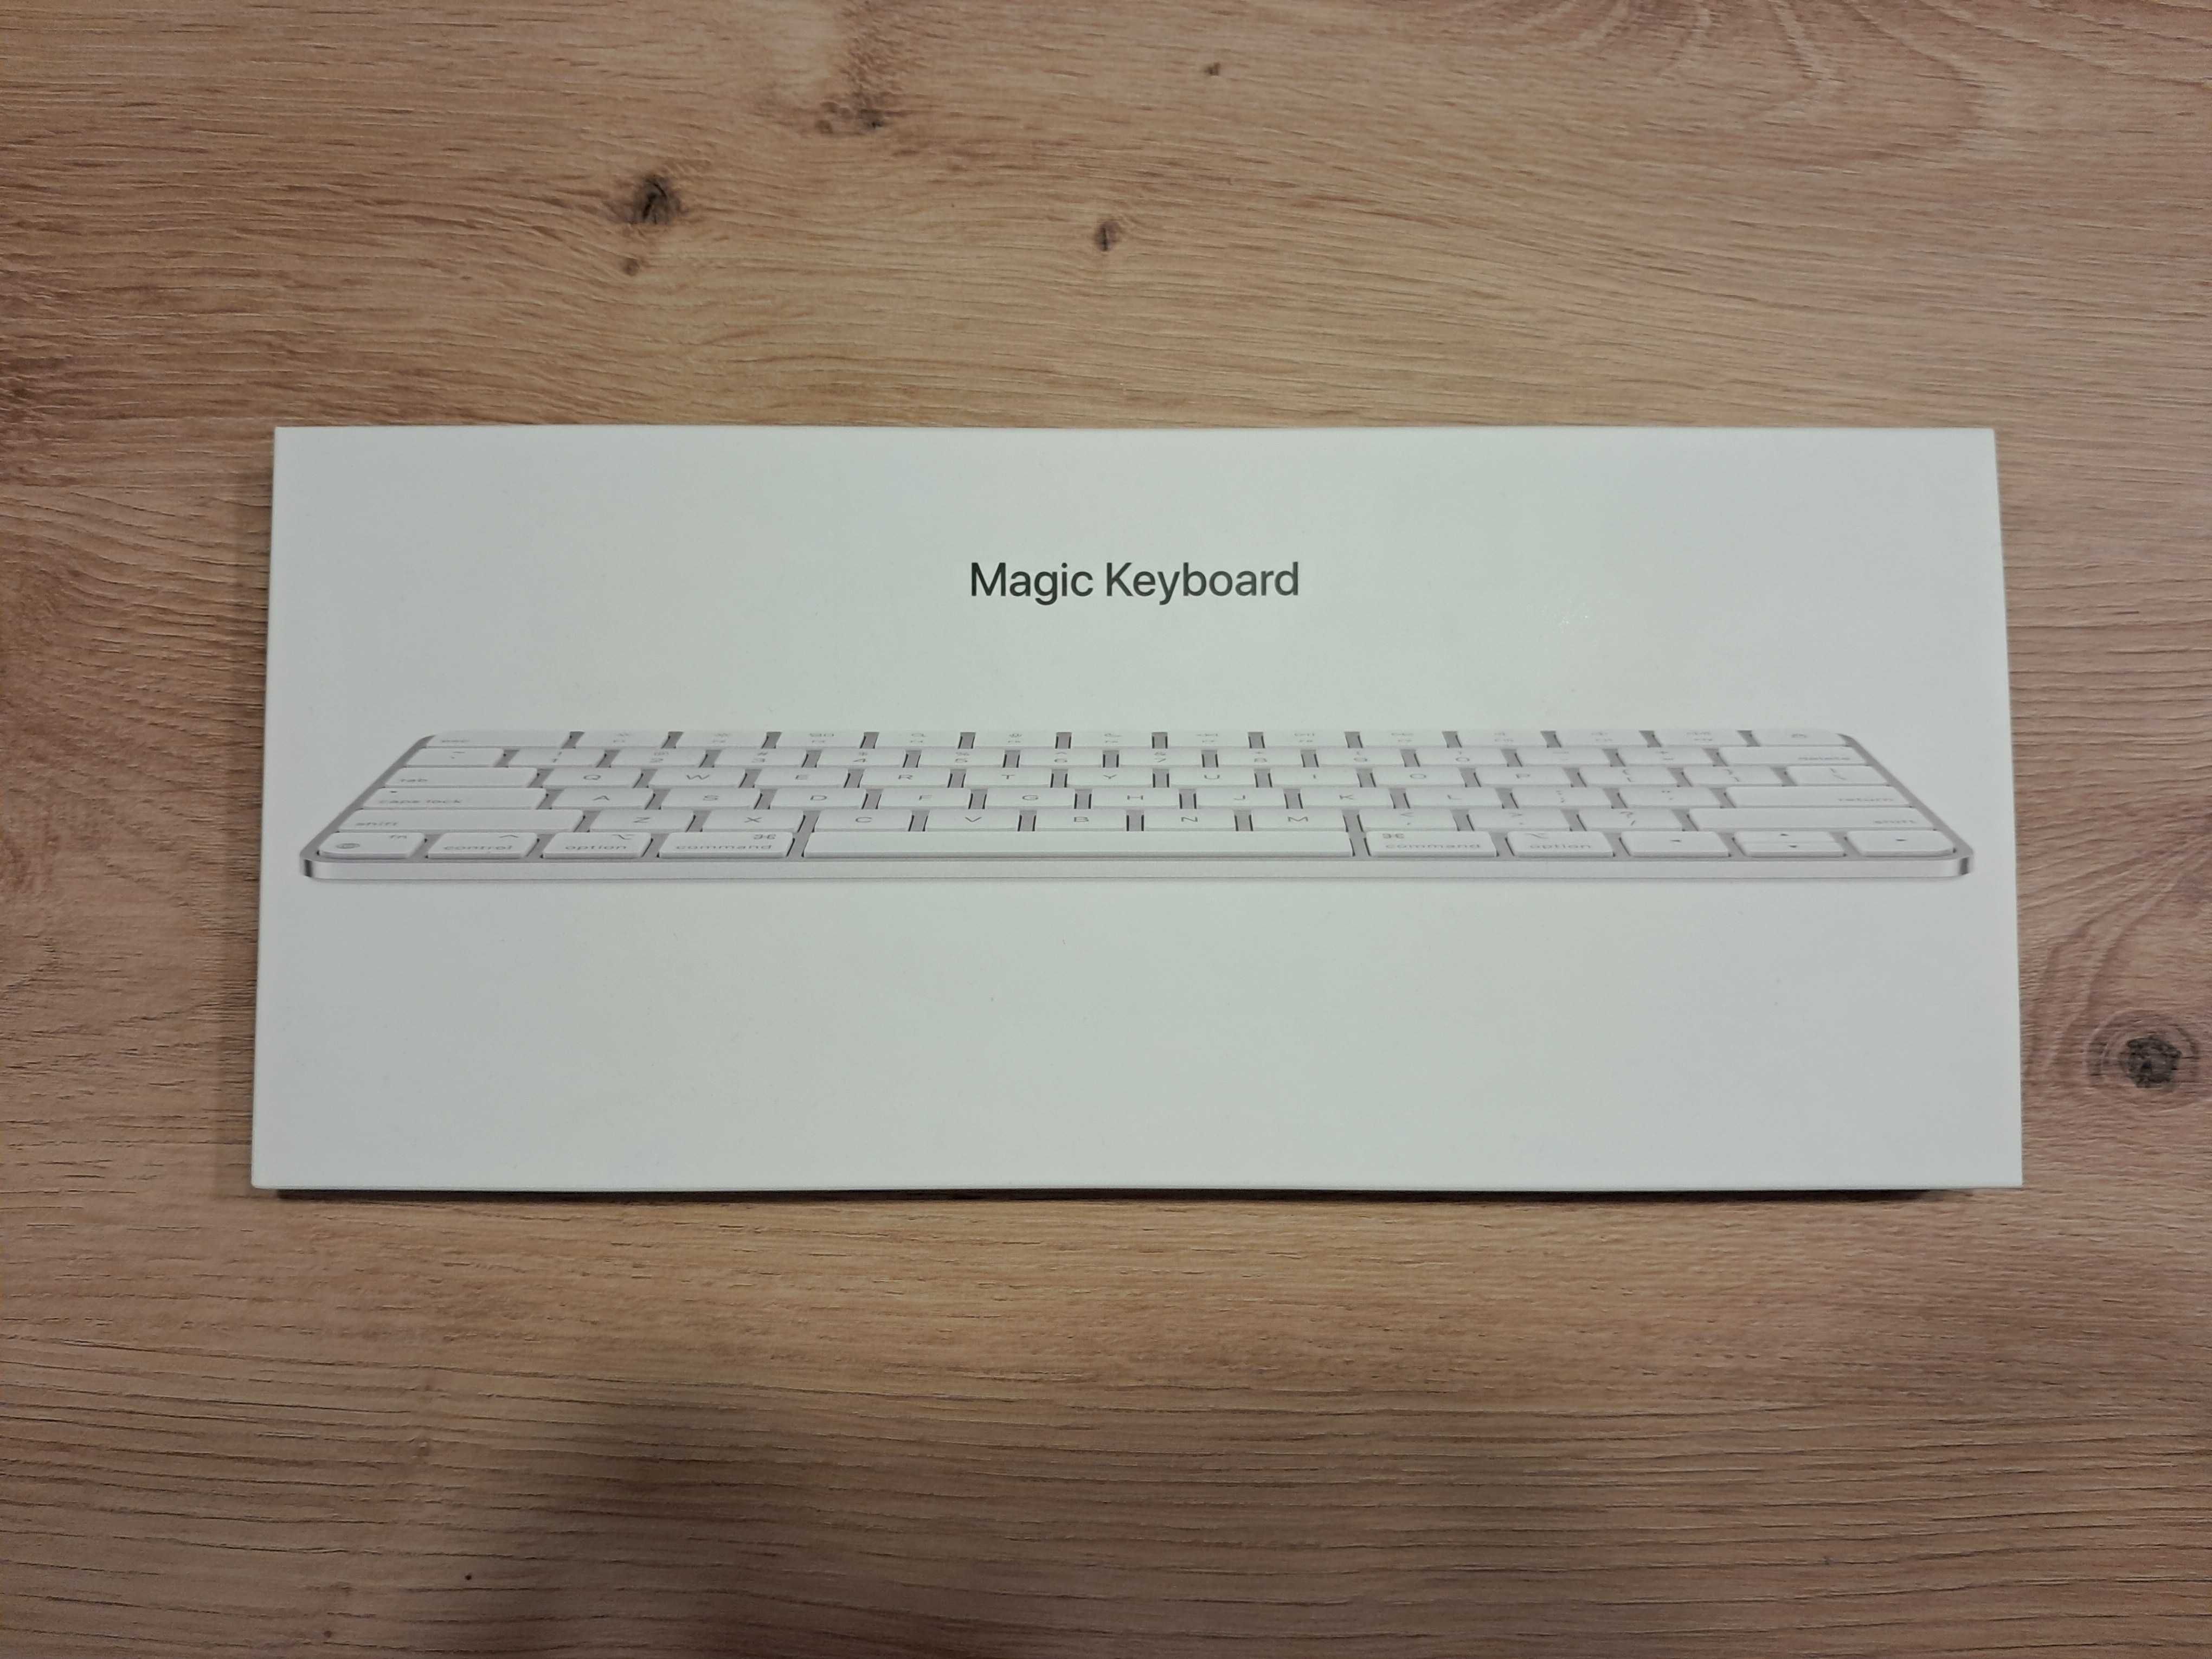 Sprzedam Apple Magic Keyboard angielski międzynarodowy